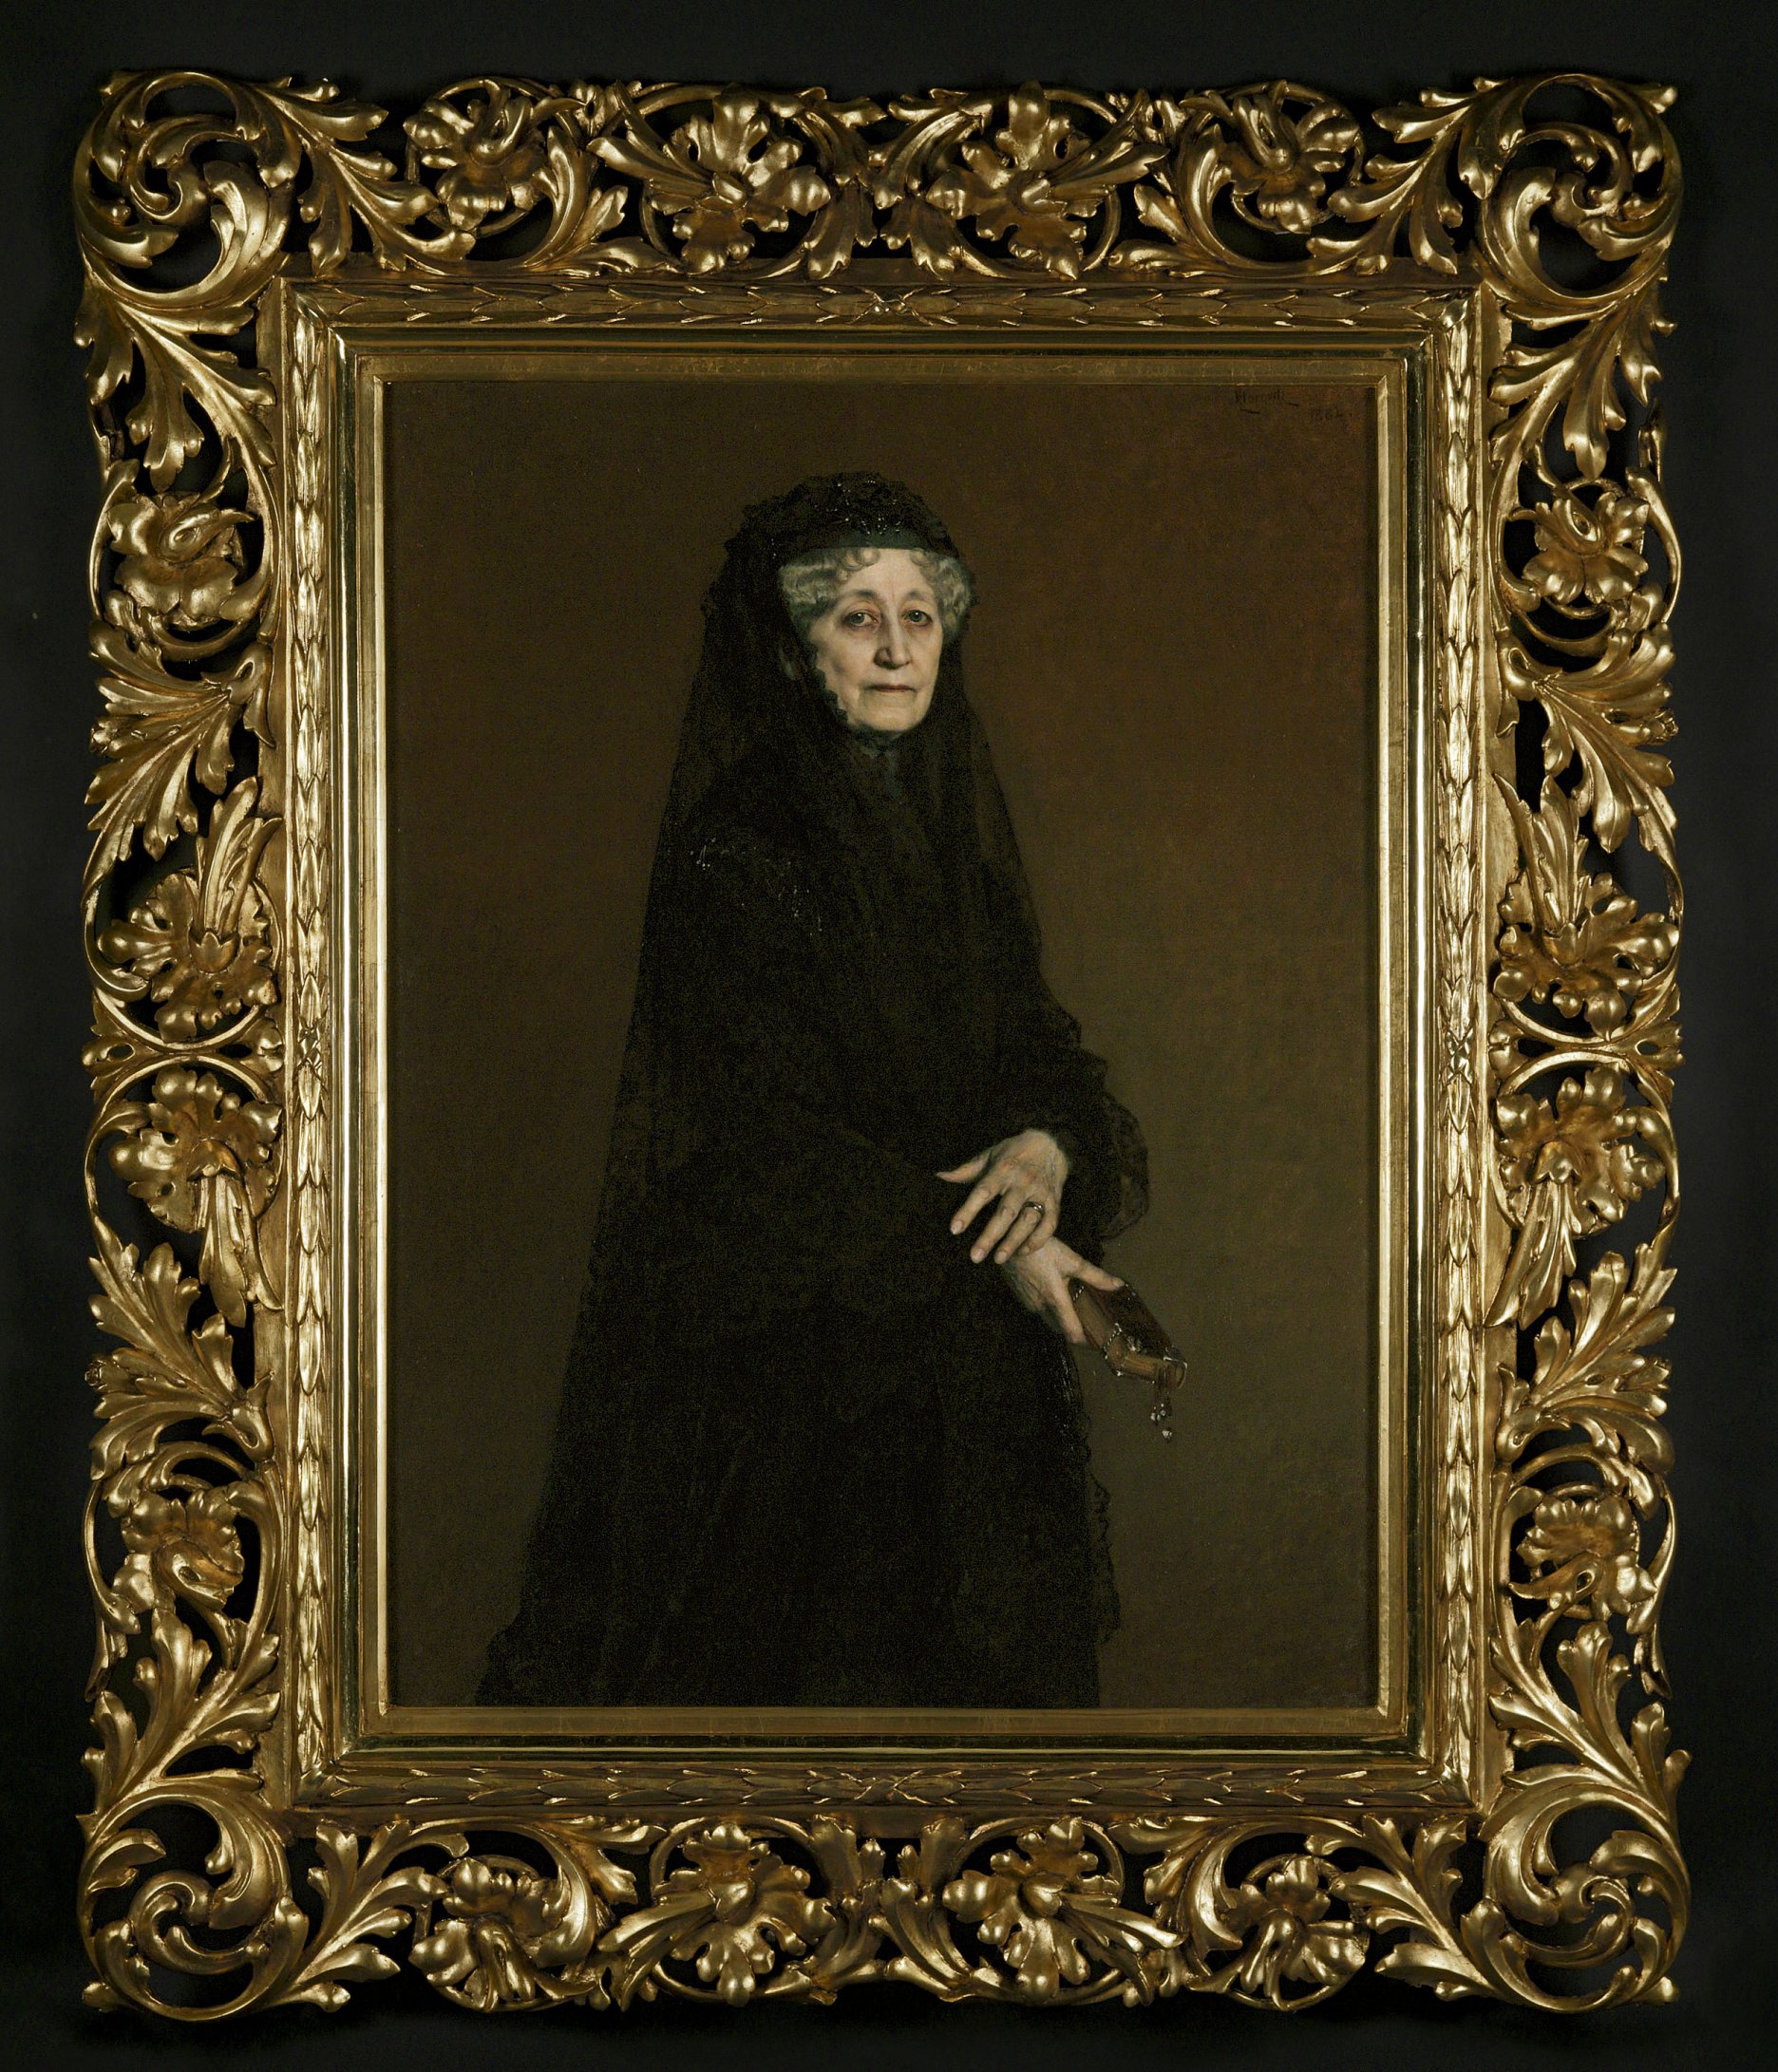 Leopold Horovitz: Portrét kňažnej Jadwigy Sapiehovej, rod. Zamoyskej. 1882. Olej, plátno. Kráľovský zámok na Waweli, Krakov 